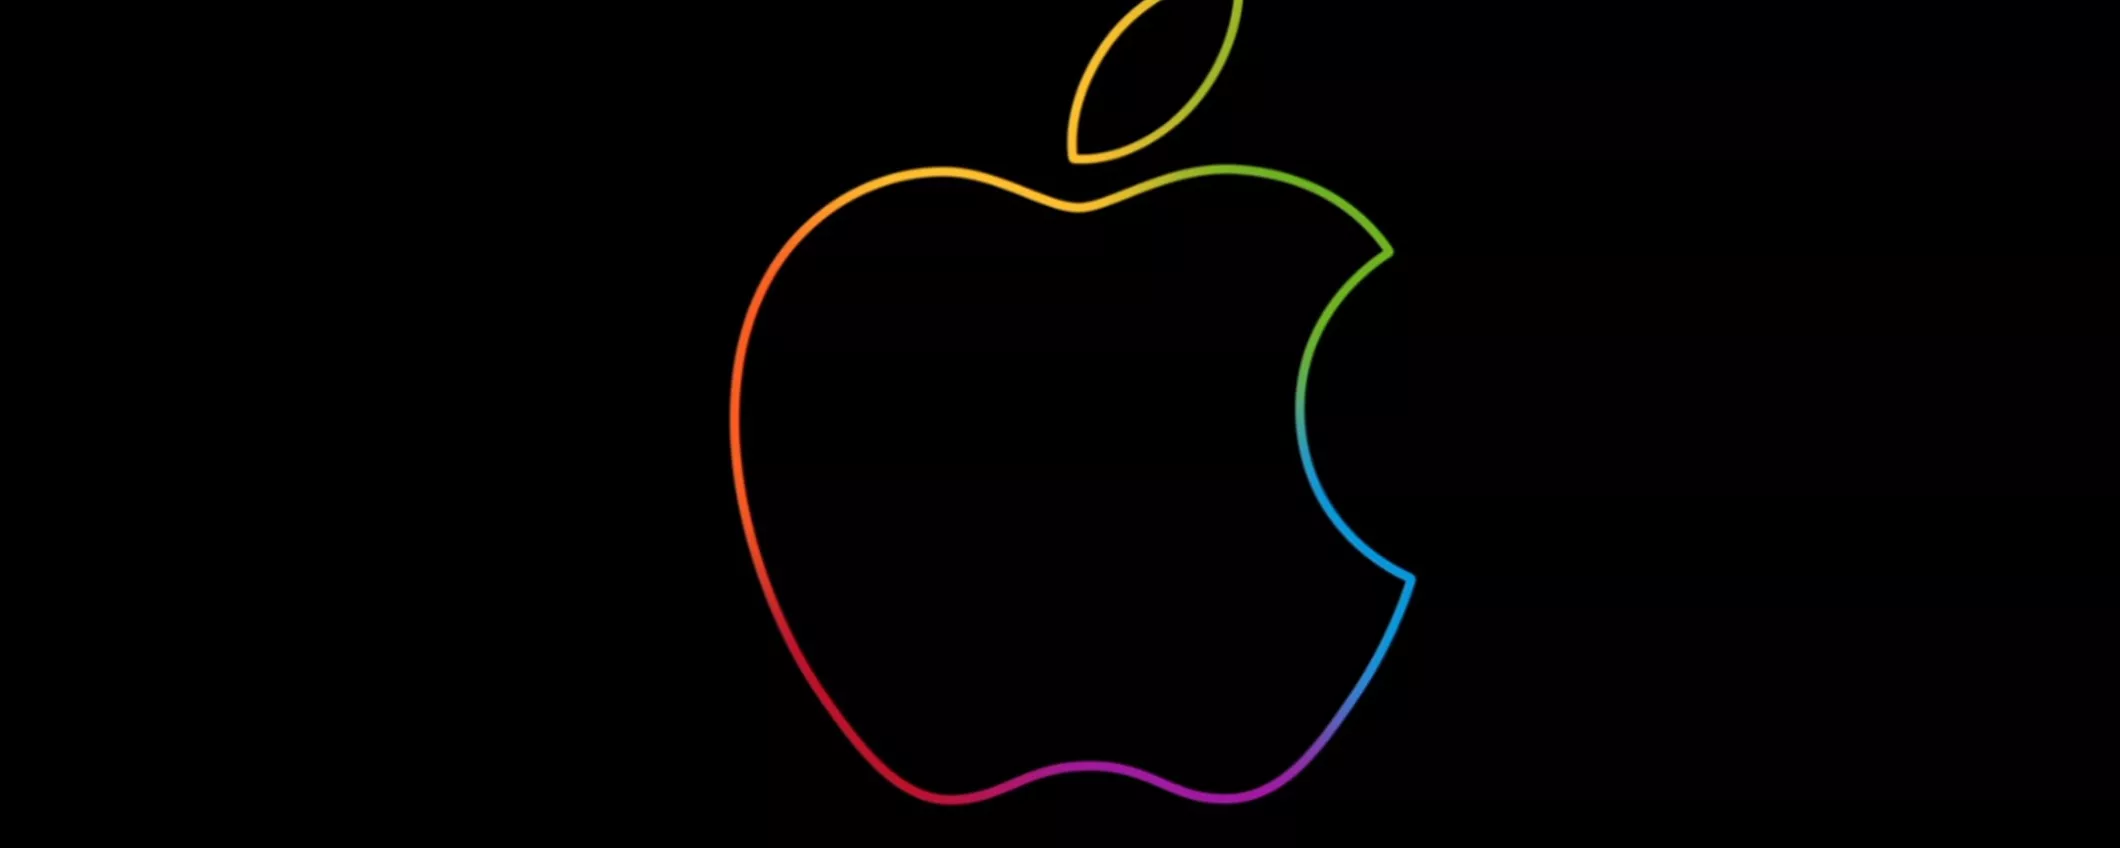 Apple Store Down: in arrivo i prodotti protagonisti dell'evento Peek Performance